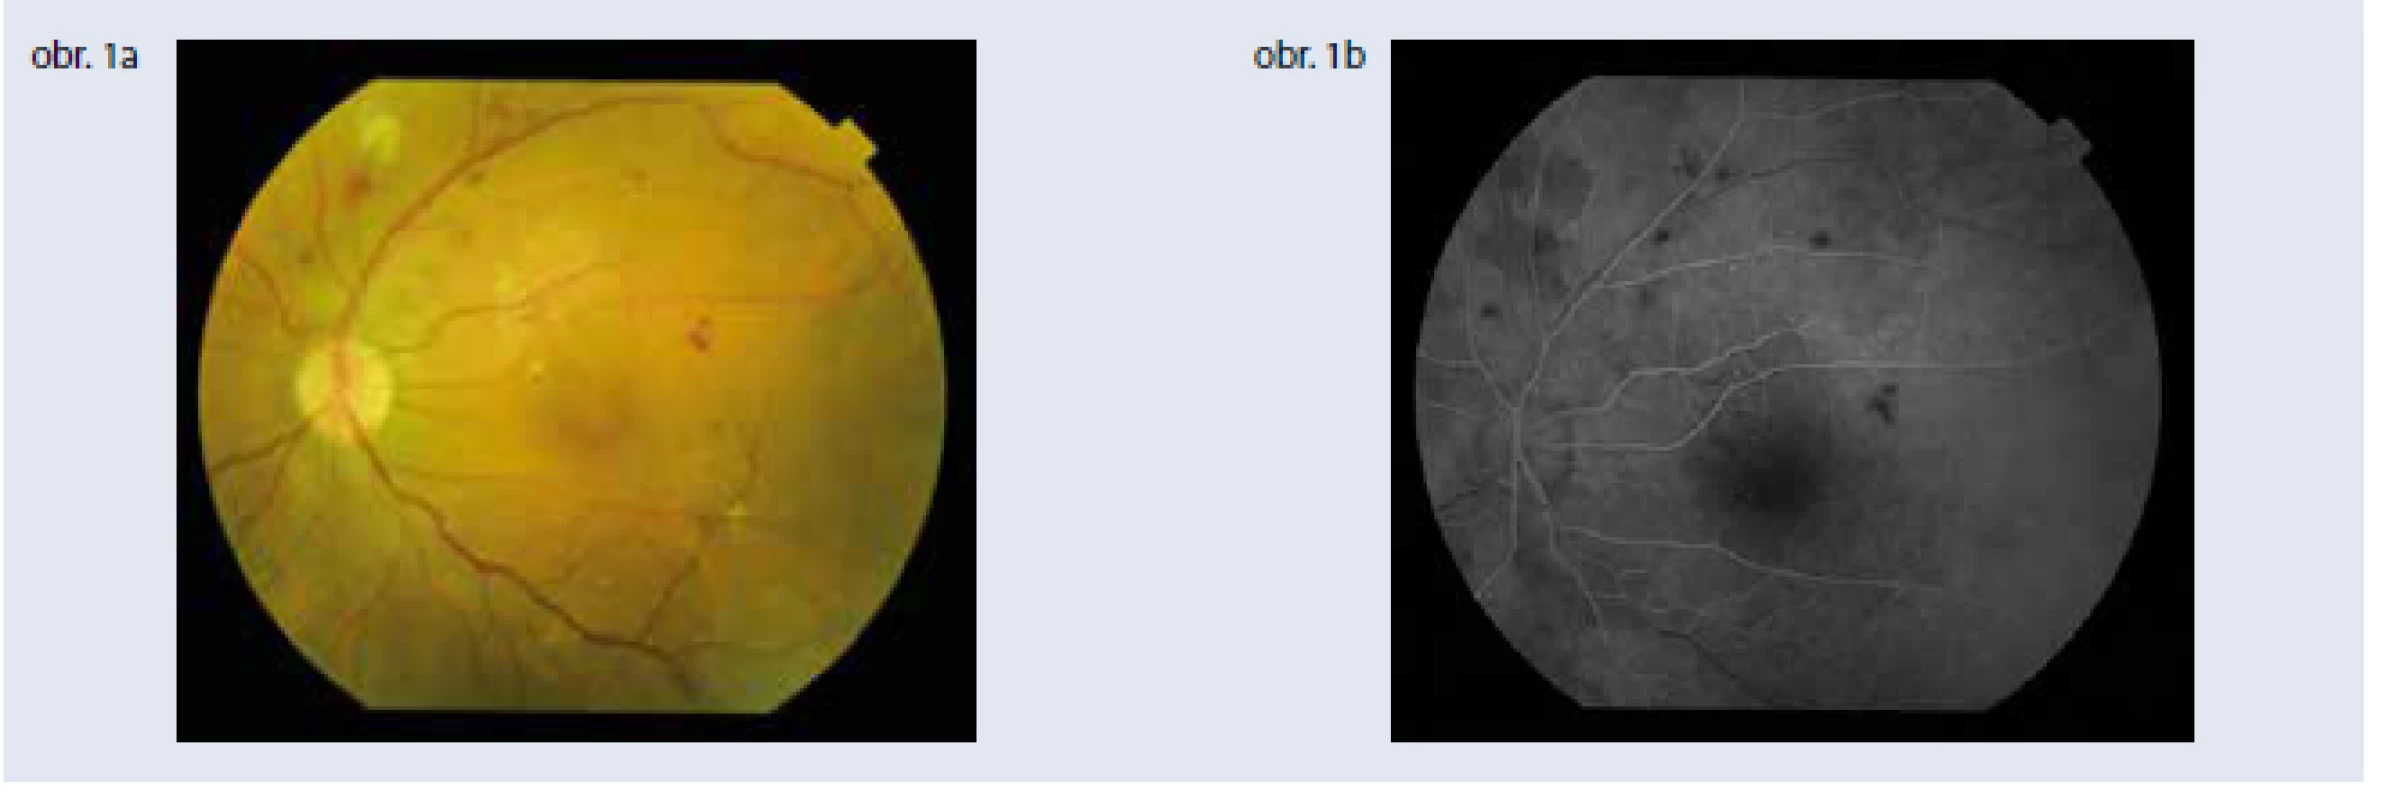 Klinické parametre a štandardná zobrazovacia vyšetrovacia metóda – fluoresceínová angiografia –
sú stále základom diagnostiky diabetickej retinopatie. Obr. 1a | Závažná neproliferatívna diabetická
retinopatia Obr. 1b | Fluoresceínová angiografia závažnej neproliferatívnej diabetickej retinopatie,
artério-venózna fáza. Archív autorky